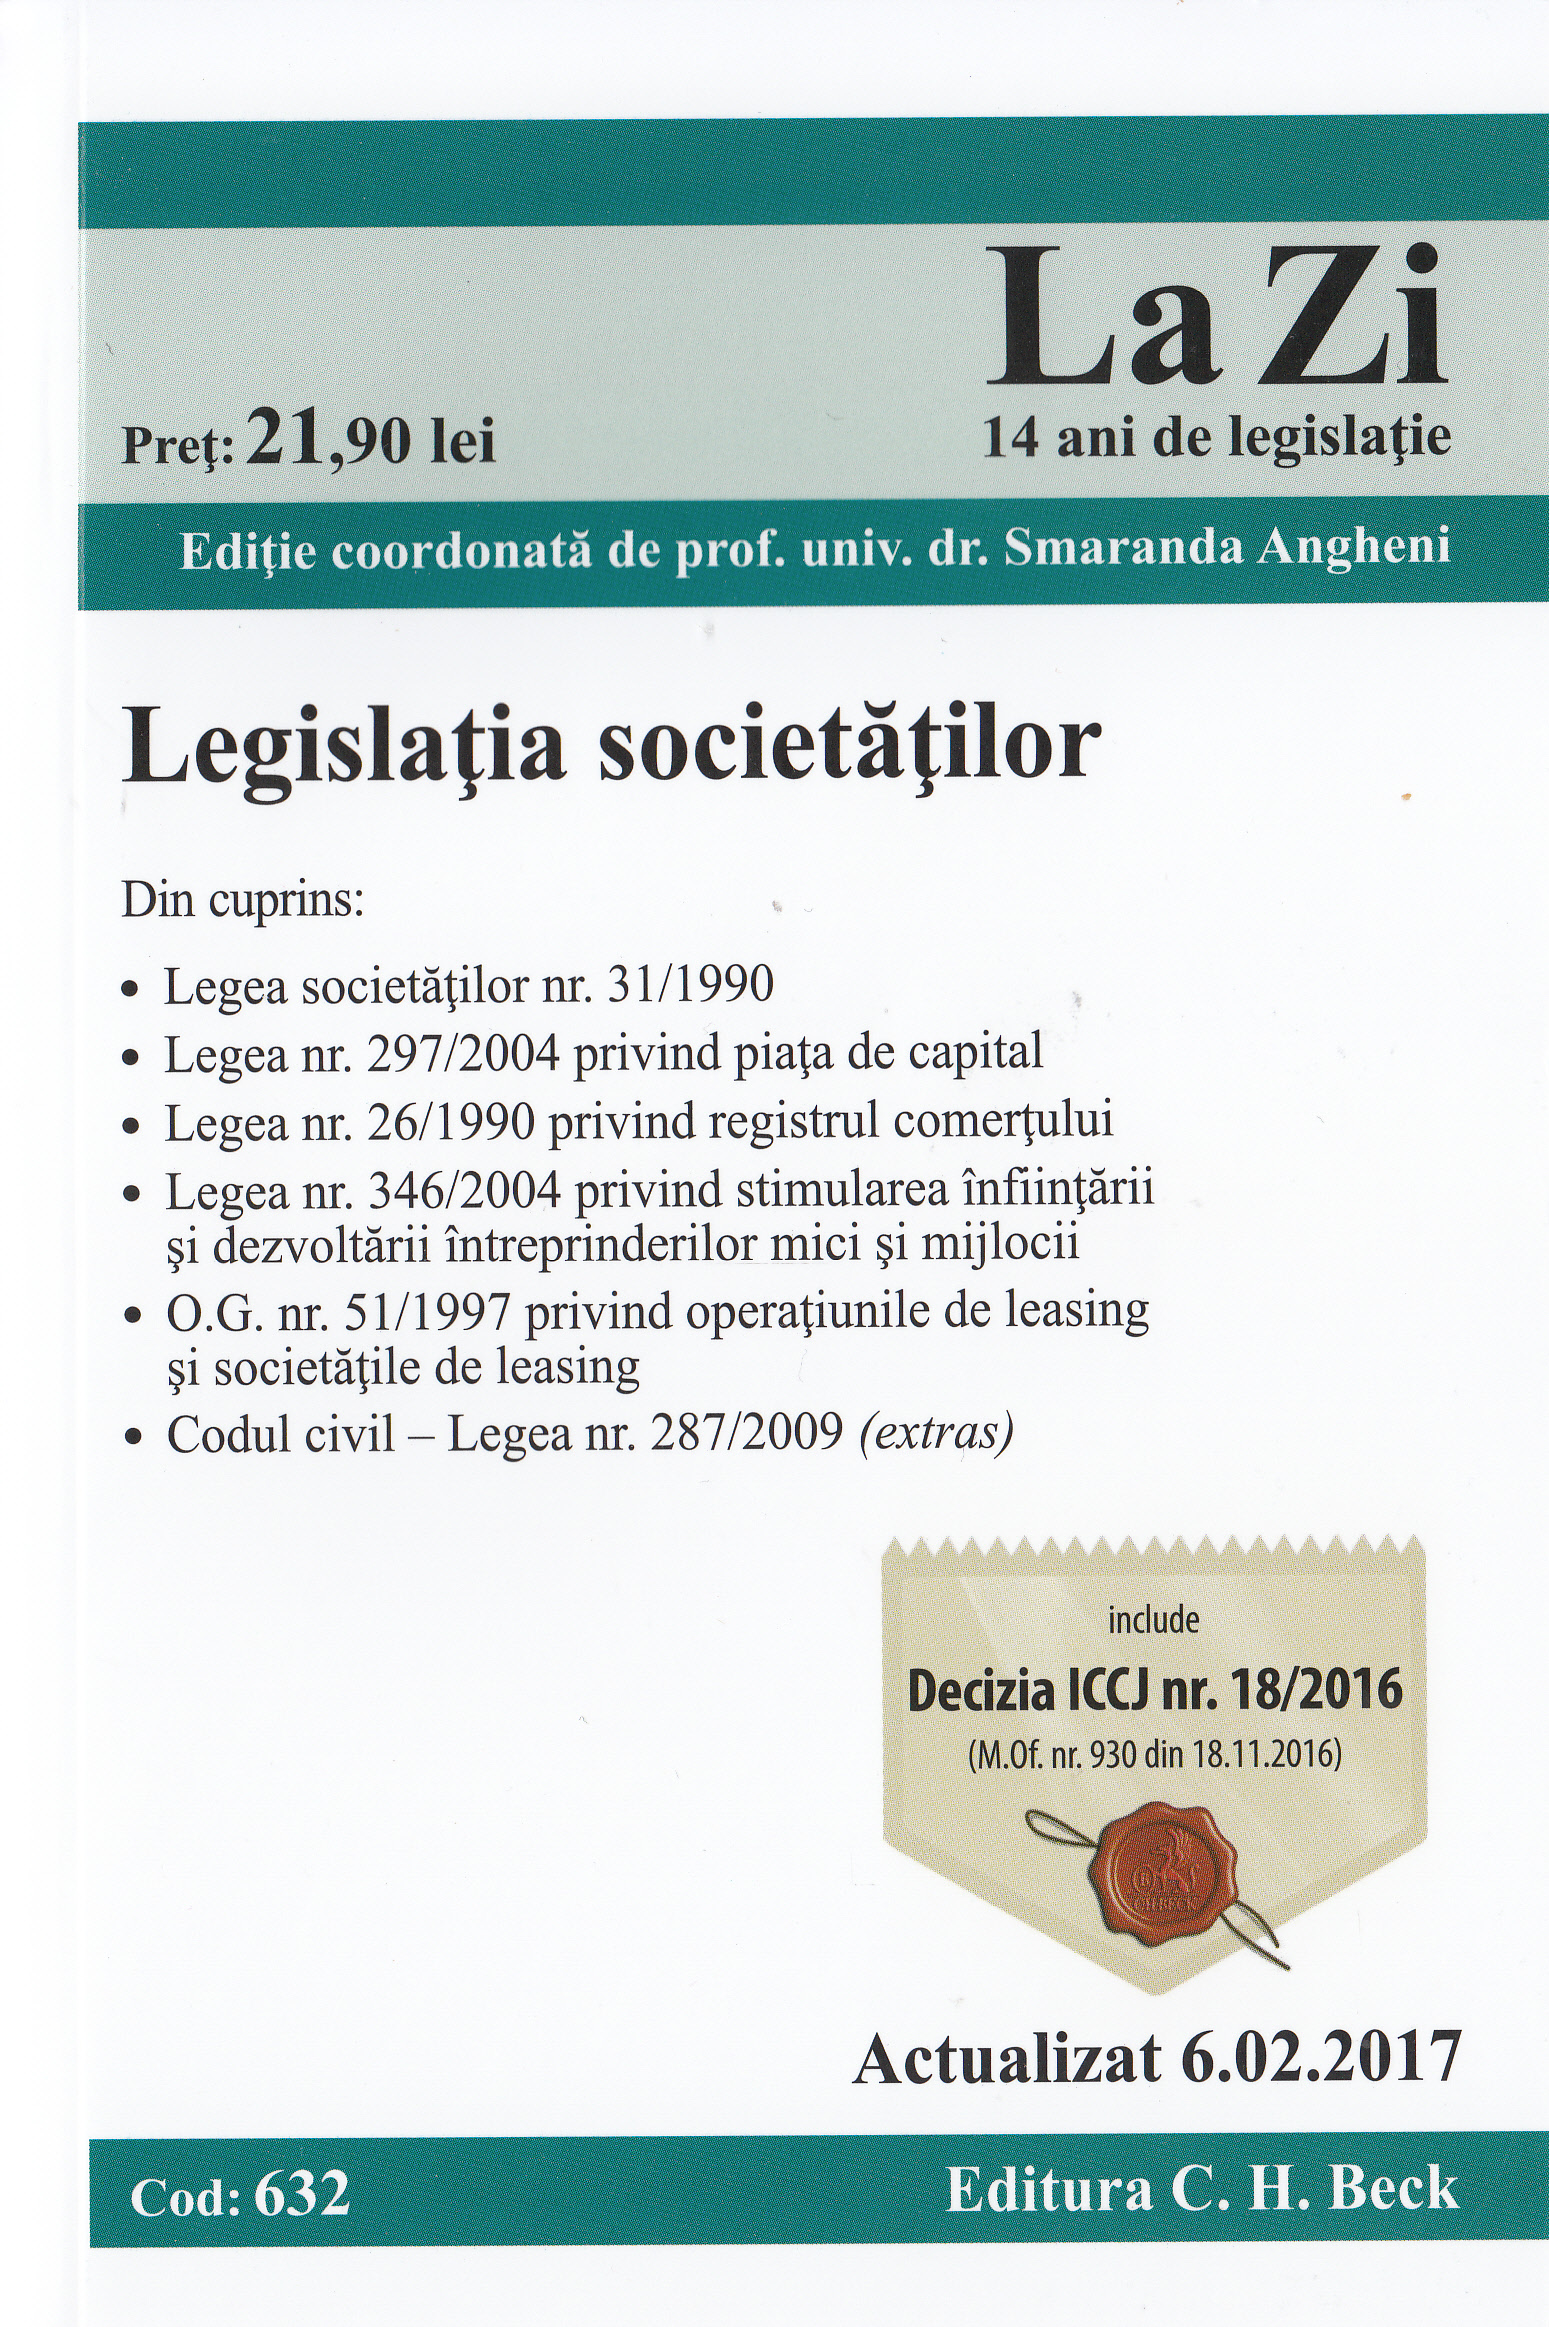 Legislatia societatilor Act. 6.02.2017